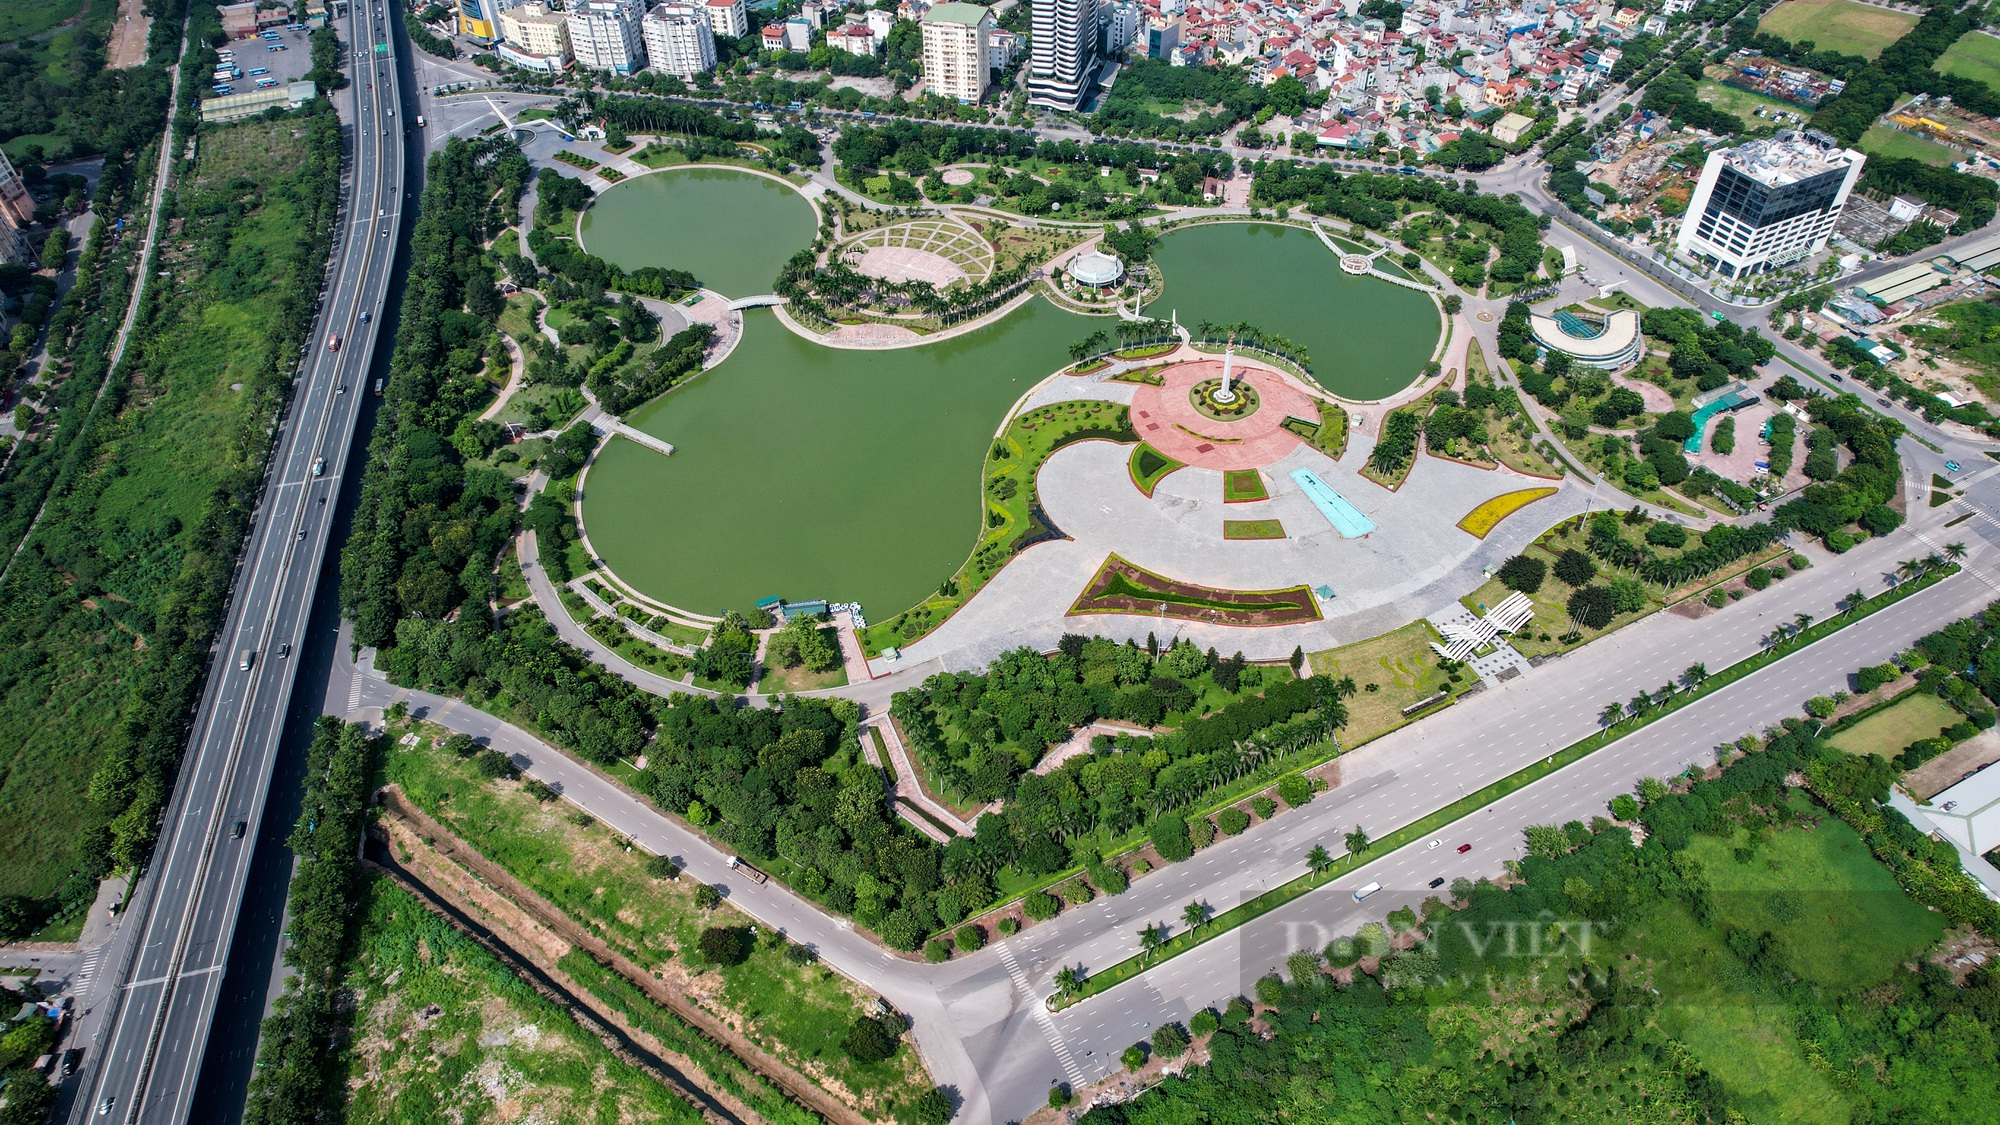 Hình ảnh công viên hiện đại nhất Hà Nội một thời, sau hơn 10 năm đưa vào sử dụng  - Ảnh 2.